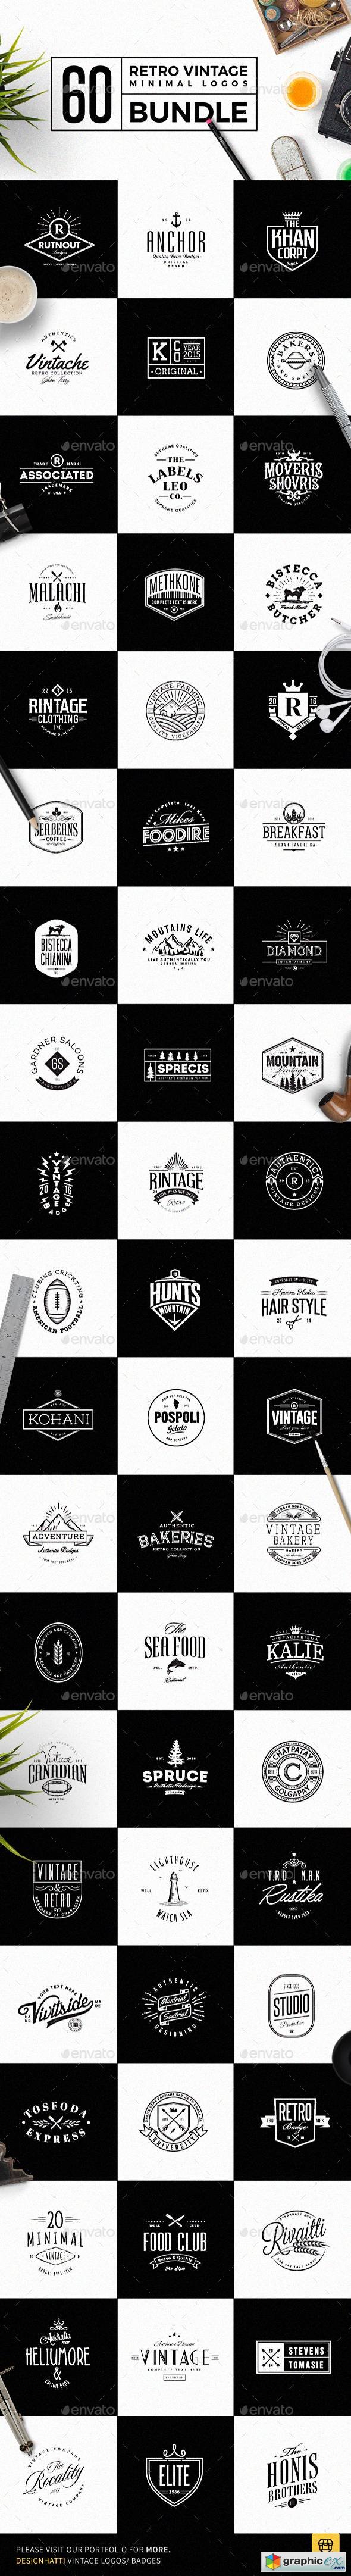 60 Vintage Minimal Logos Bundle